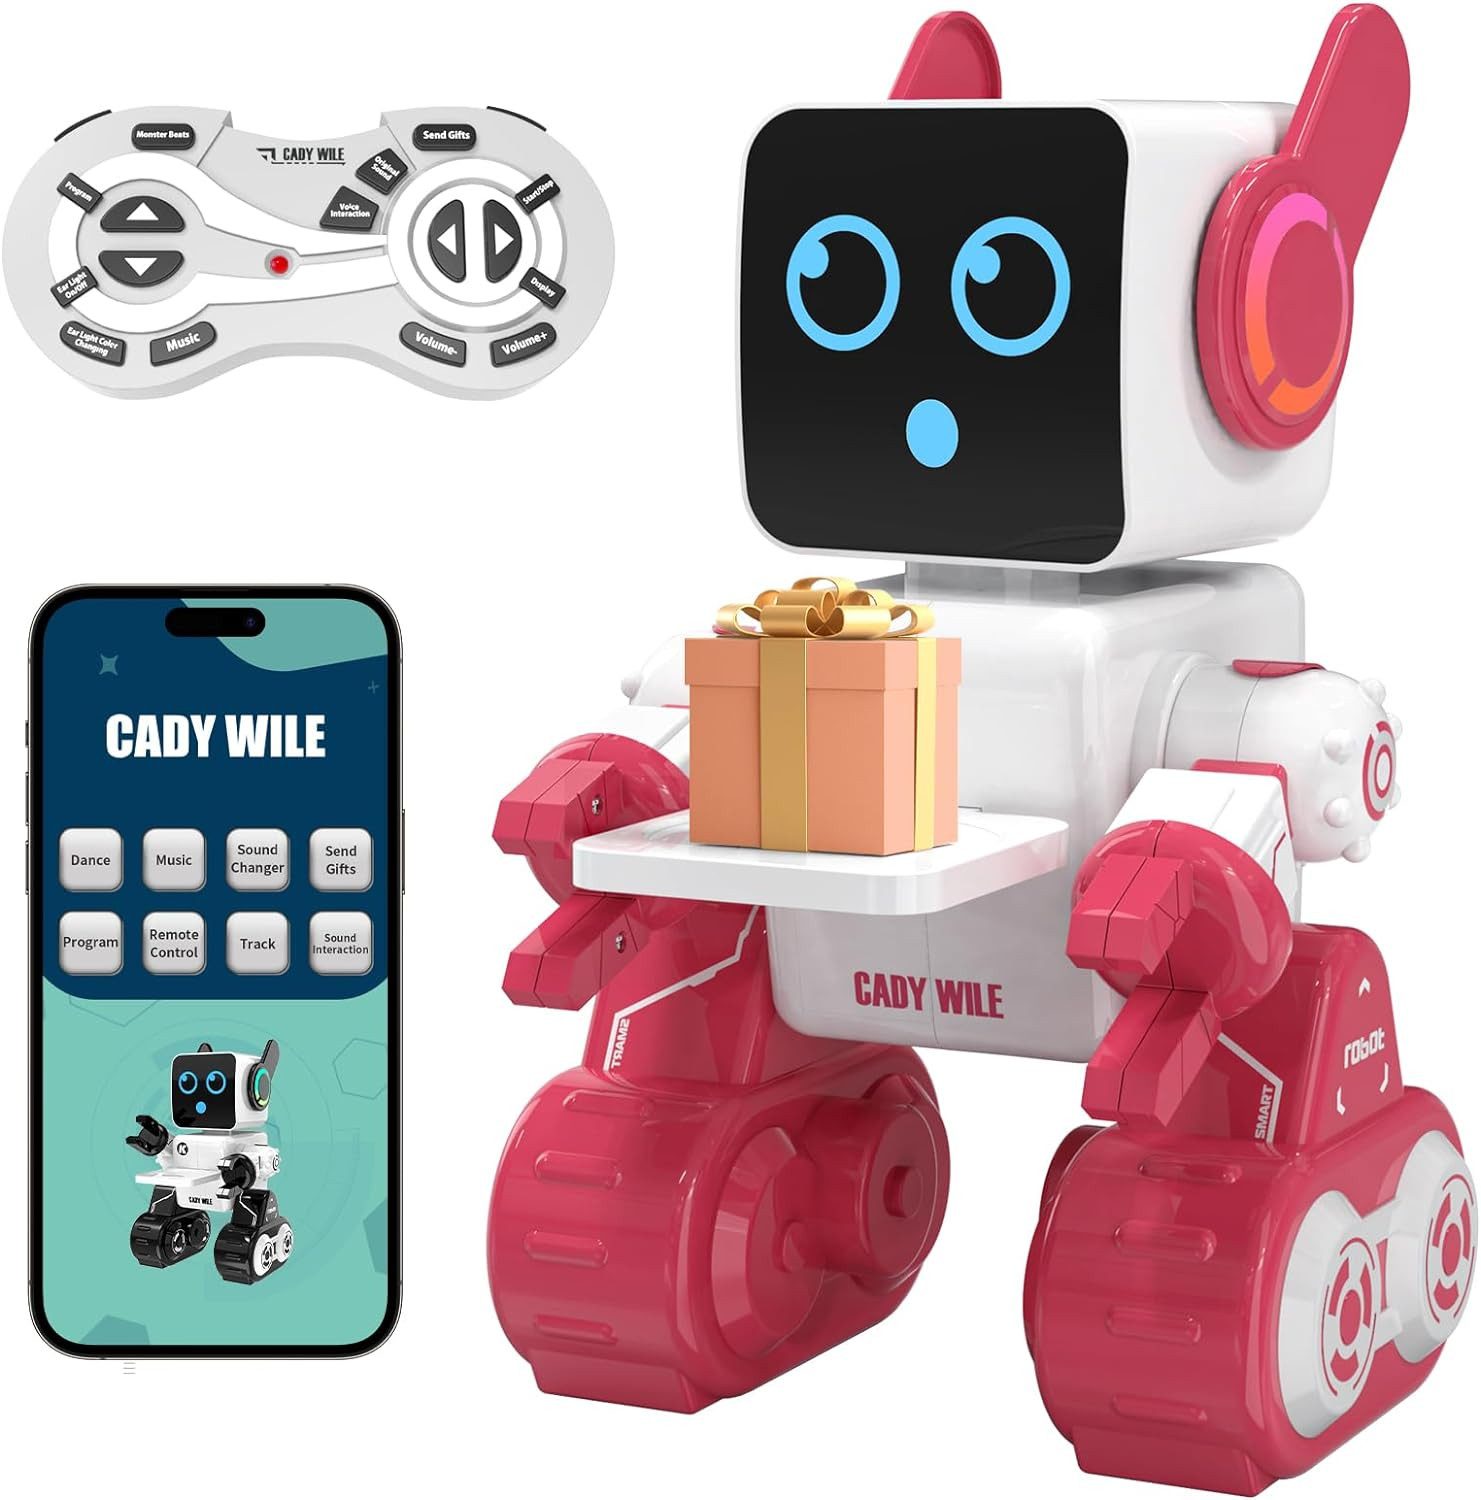 Powerwill Lernroboter Ferngesteuert Roboter Spielzeug für Kinder,Intelligent Programmier (wiederaufladbarer RC-Roboter-Bausatz), LED intelligenter Roboter,spricht Tanzbewegungen,integrierte Münzbank